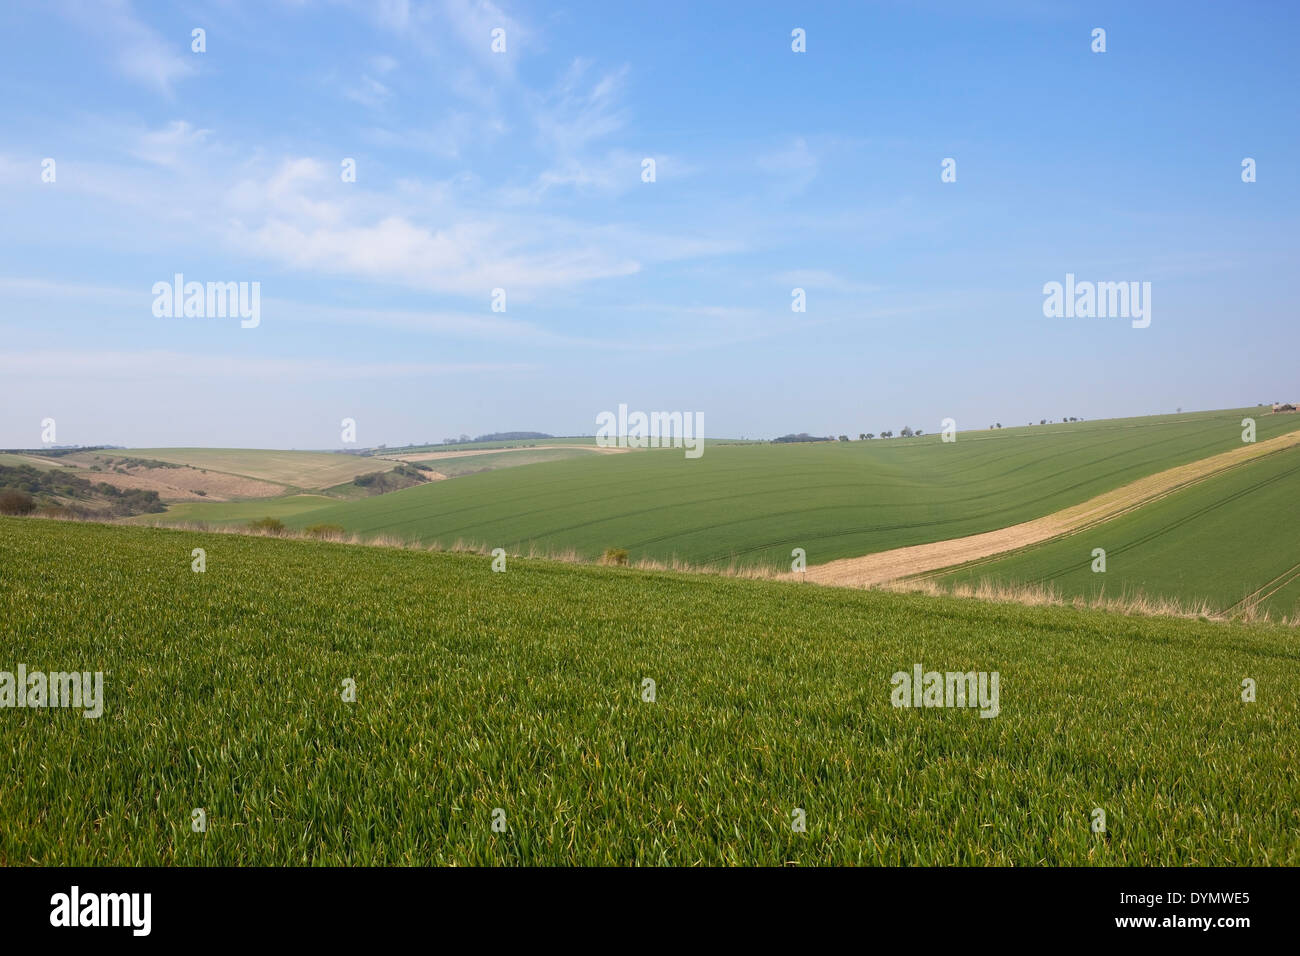 Rolling campos agrícolas plantadas con cultivos de trigo en Burdale en el Yorkshire Wolds, Inglaterra bajo un cielo azul Foto de stock